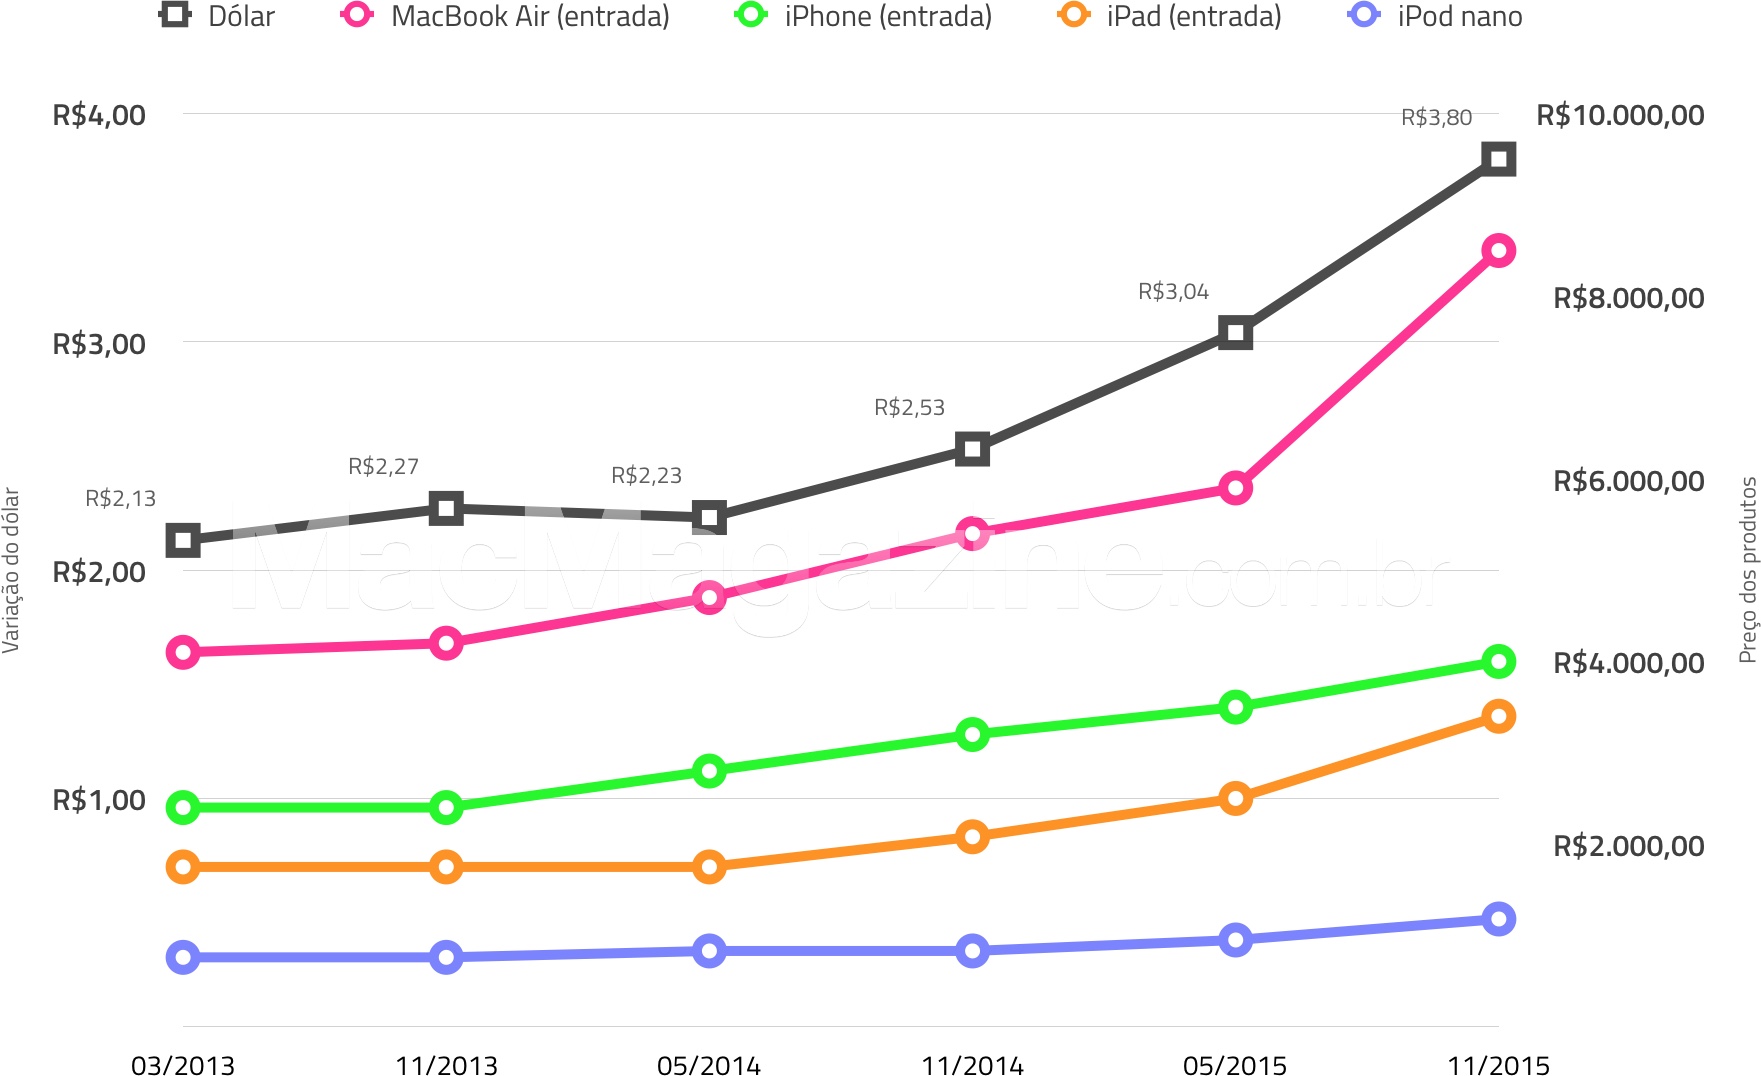 Gráfico comparando os preços da Apple no Brasil